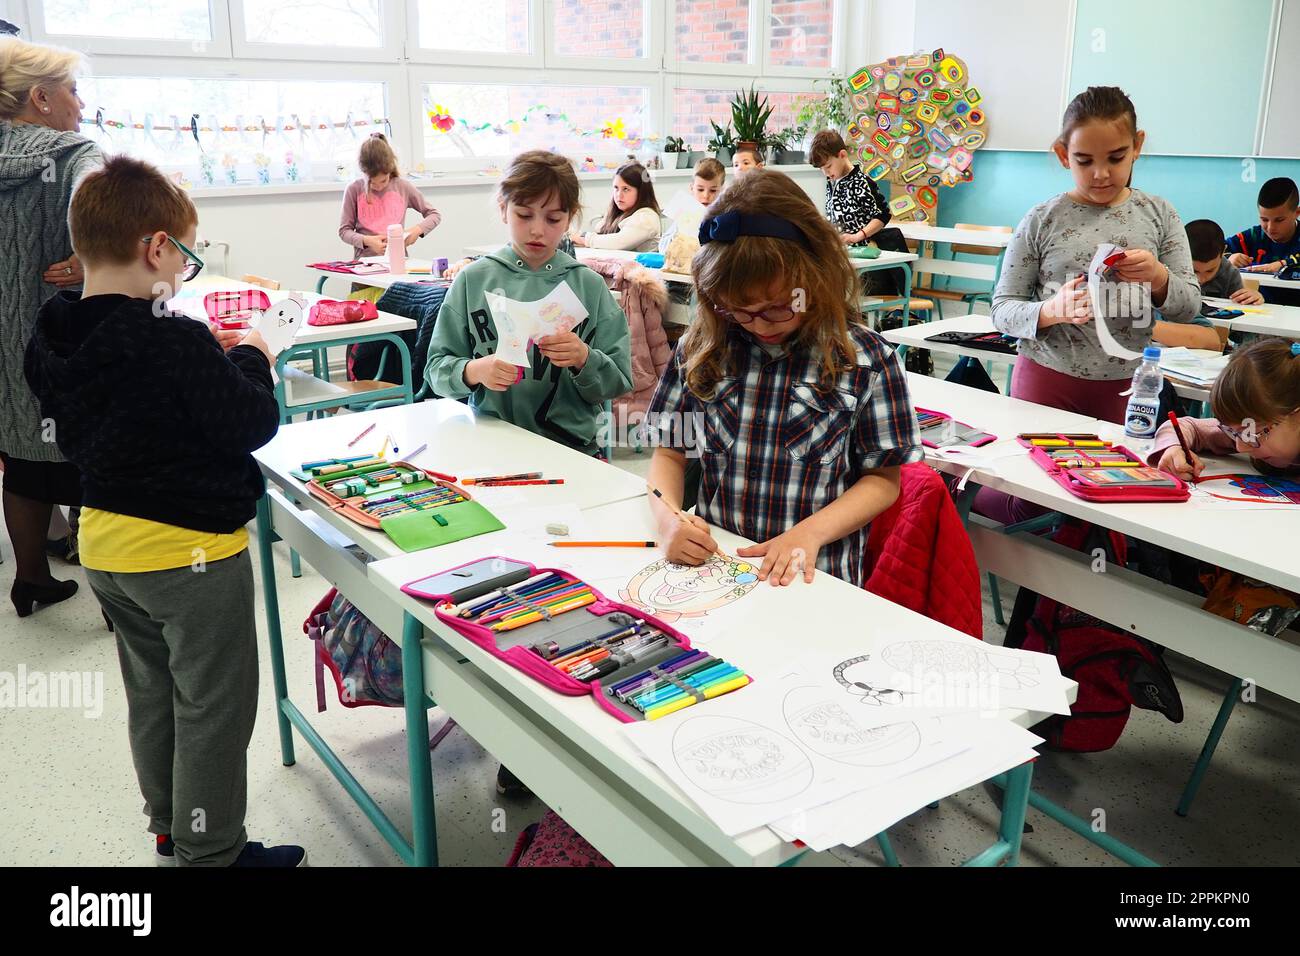 Kinder im Alter von 9-10 Jahren, Jungen und Mädchen, machen hausgemachtes Kunsthandwerk beim Unterricht. Moderne Bildungsstandards, Entwicklung kreativer Fähigkeiten und Feinmotorik in der Schule 9. April 2022 Serbien Srem Stockfoto